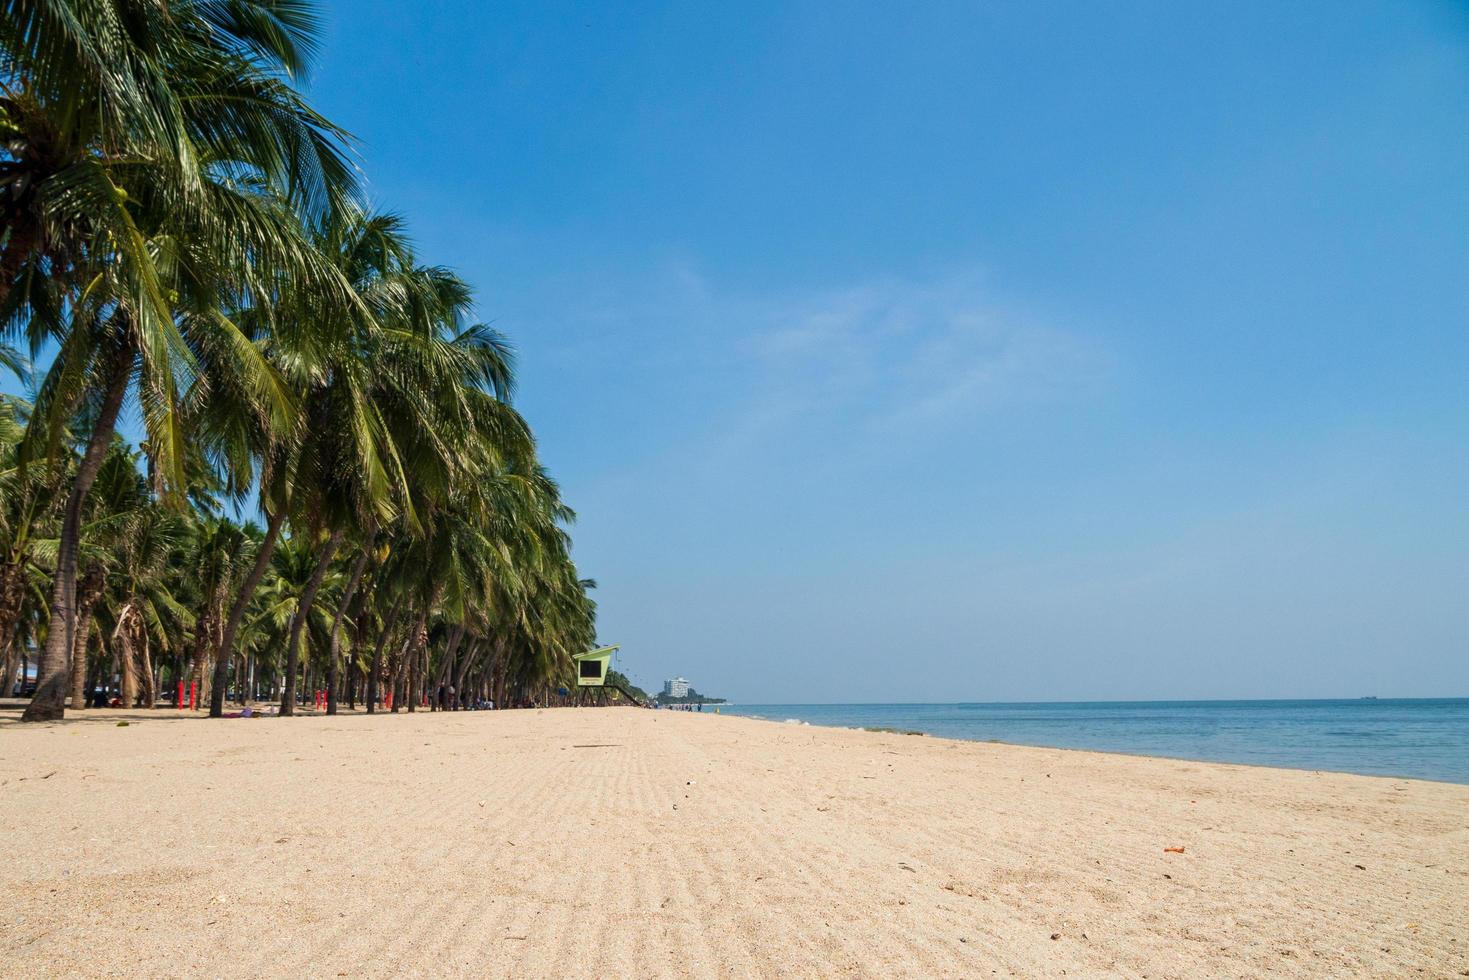 paysage été panorama vue de face tropical palmiers et cocotiers mer plage bleu blanc sable ciel fond calme nature océan beau vague eau voyage bangsaen plage est thaïlande chonburi photo